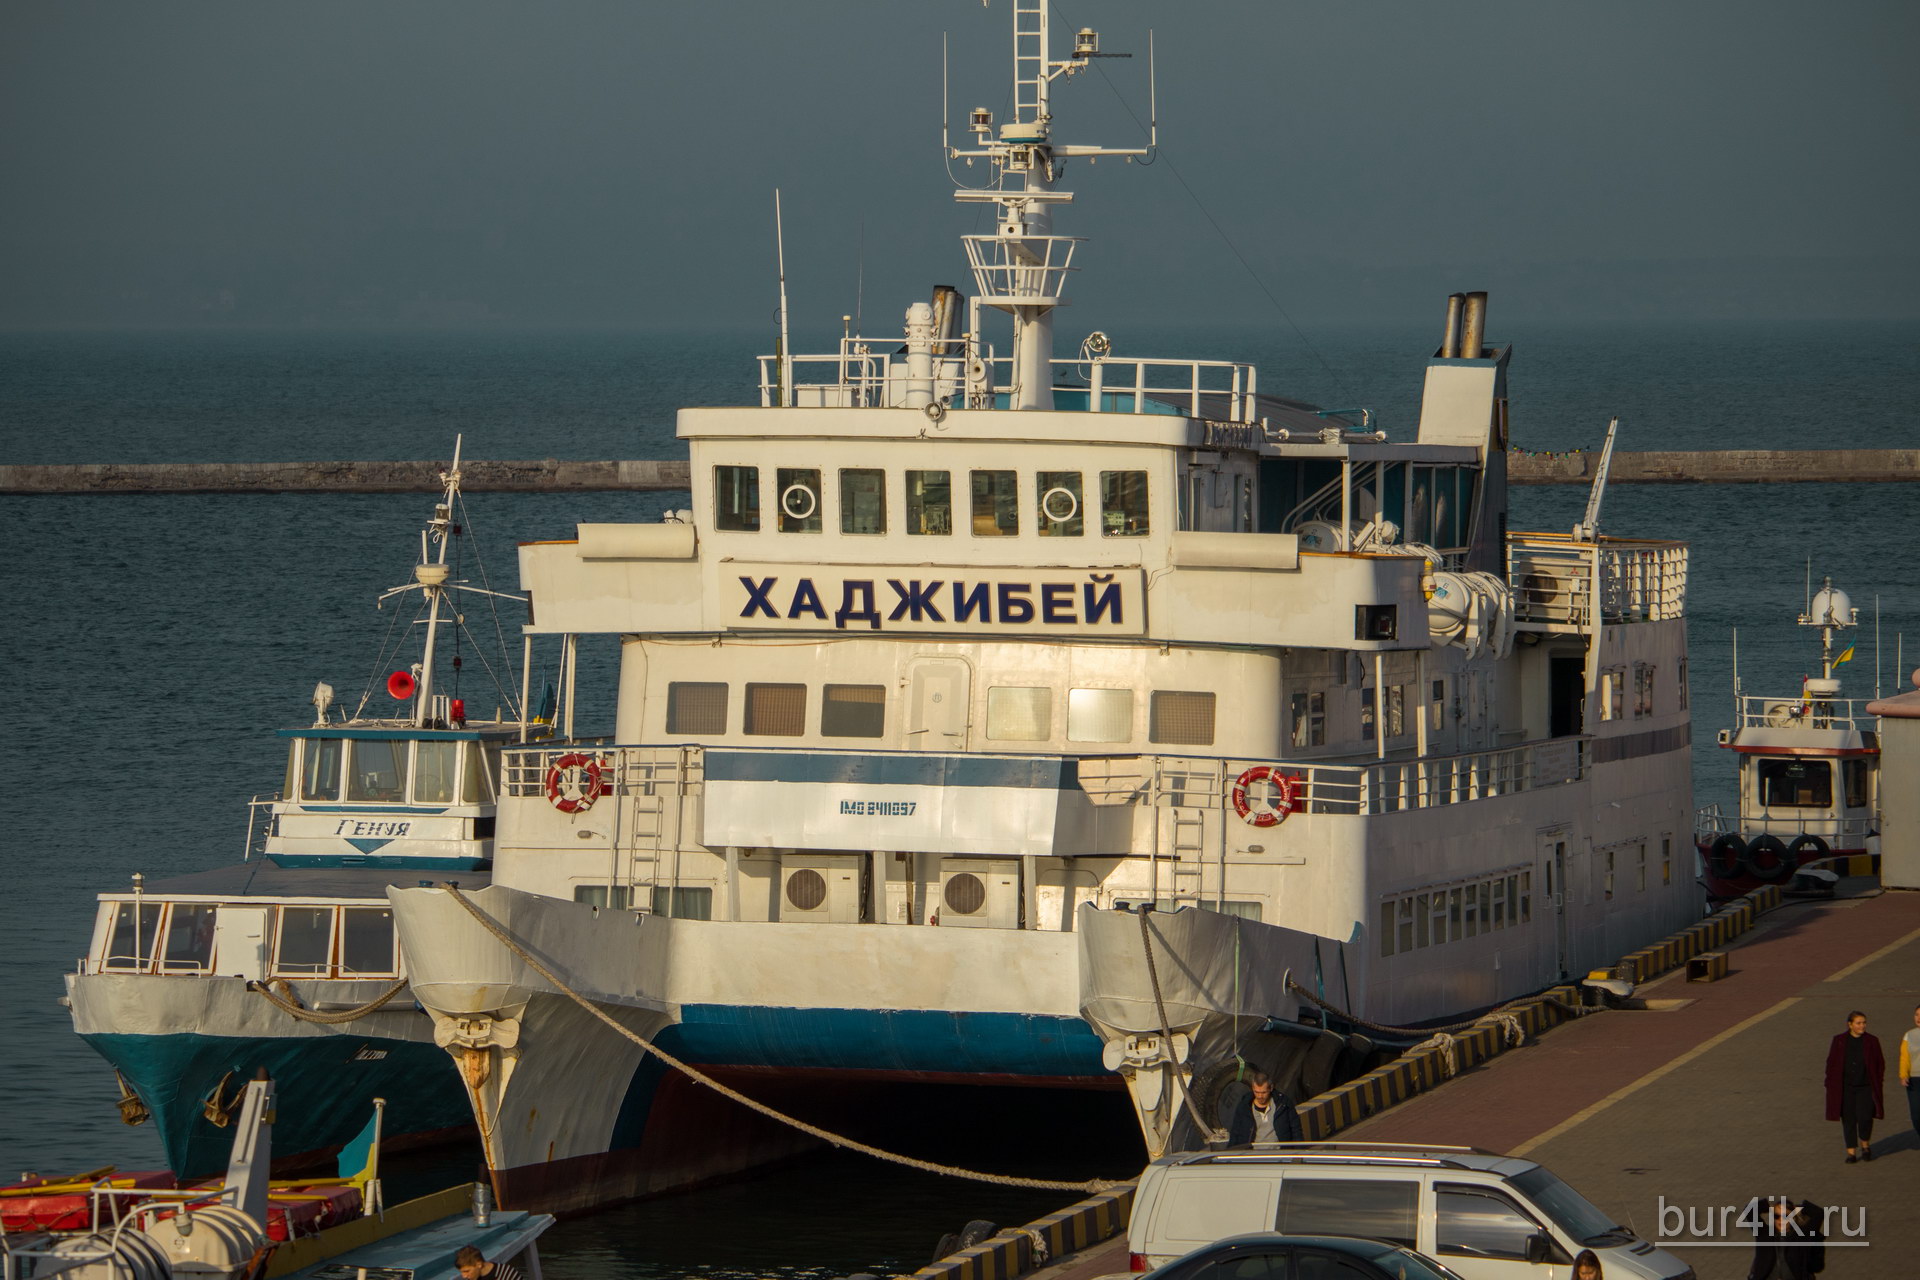 Судно под названием Хаджибей в порту города Одесса 2